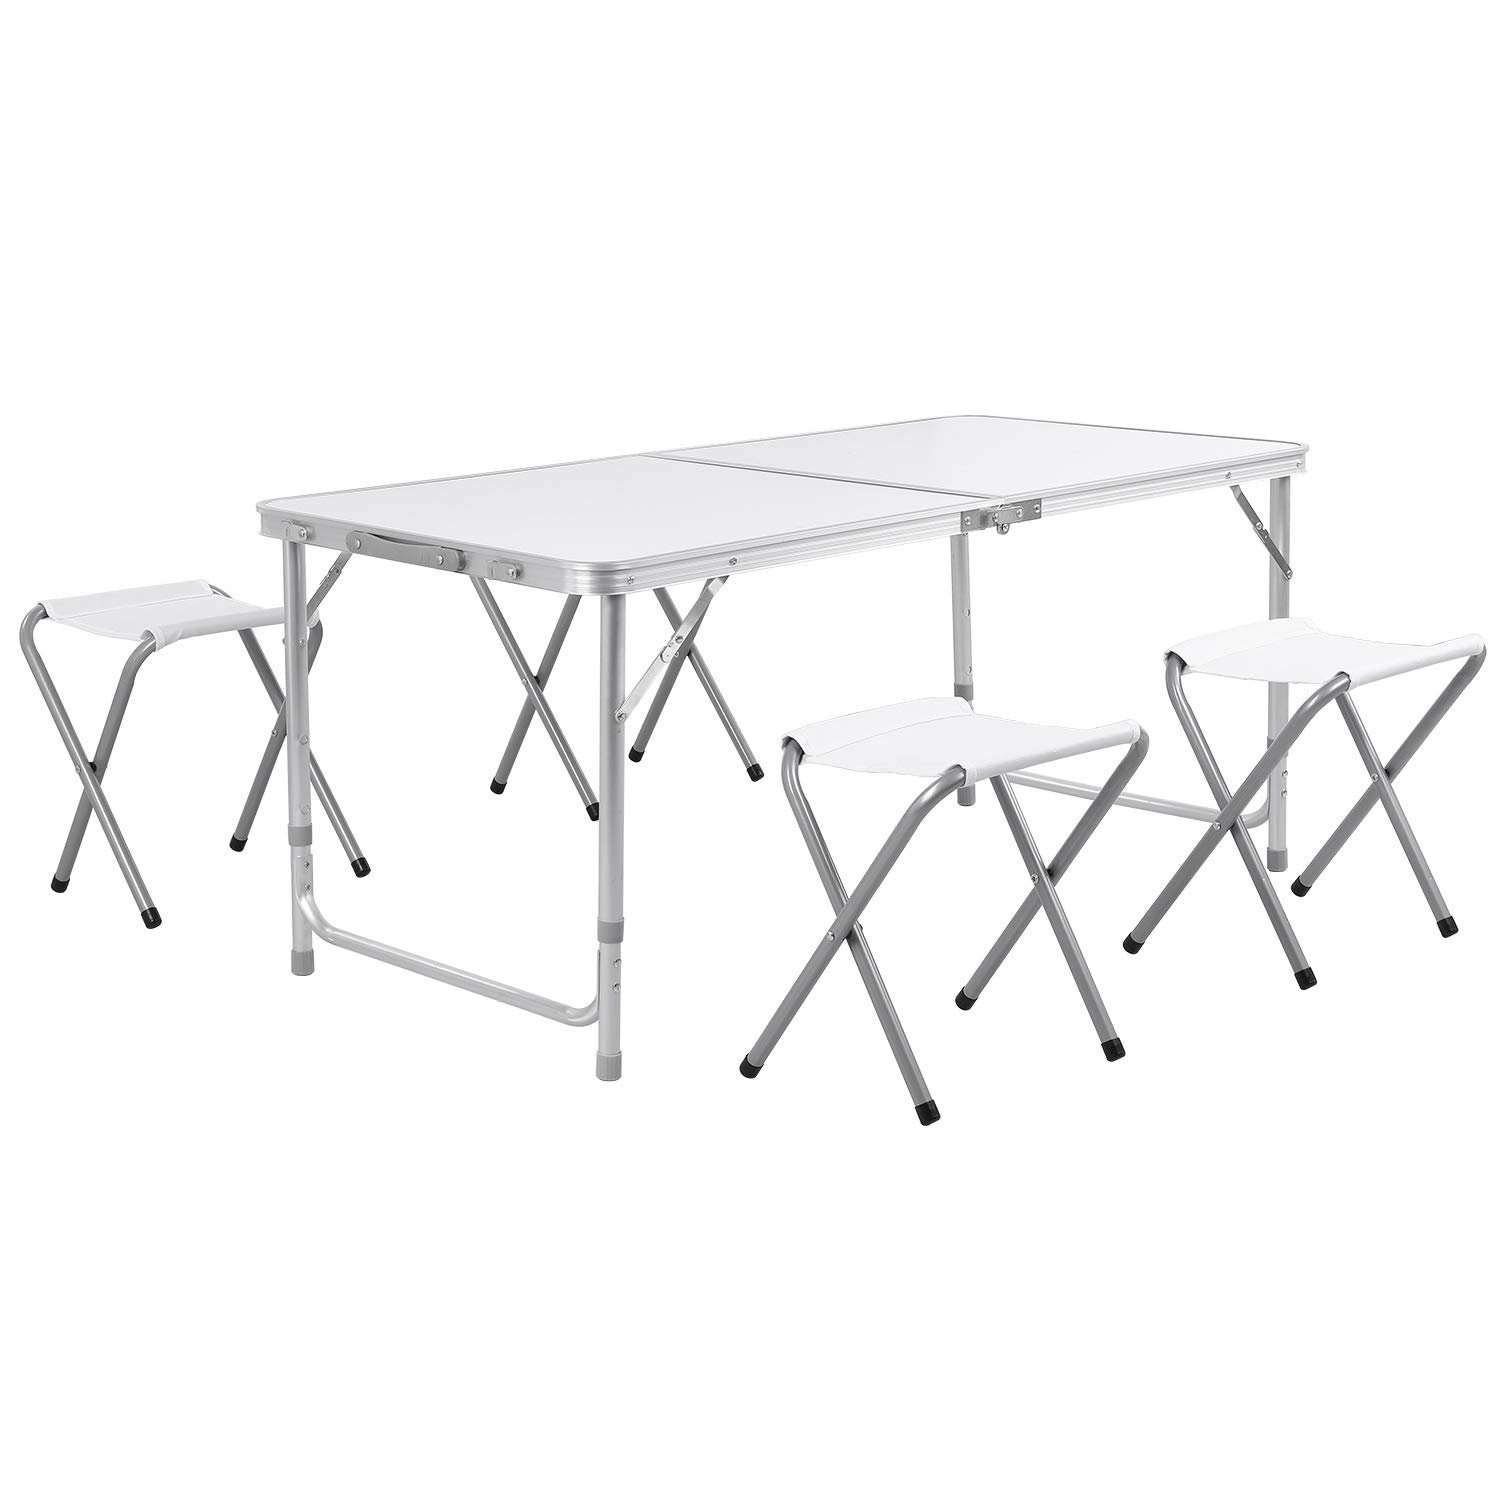 Homfa Campingtisch Klapptisch faltbar Gartentisch aus Aluminium Falttisch höhenverstellbar schwarz 180x60cm 